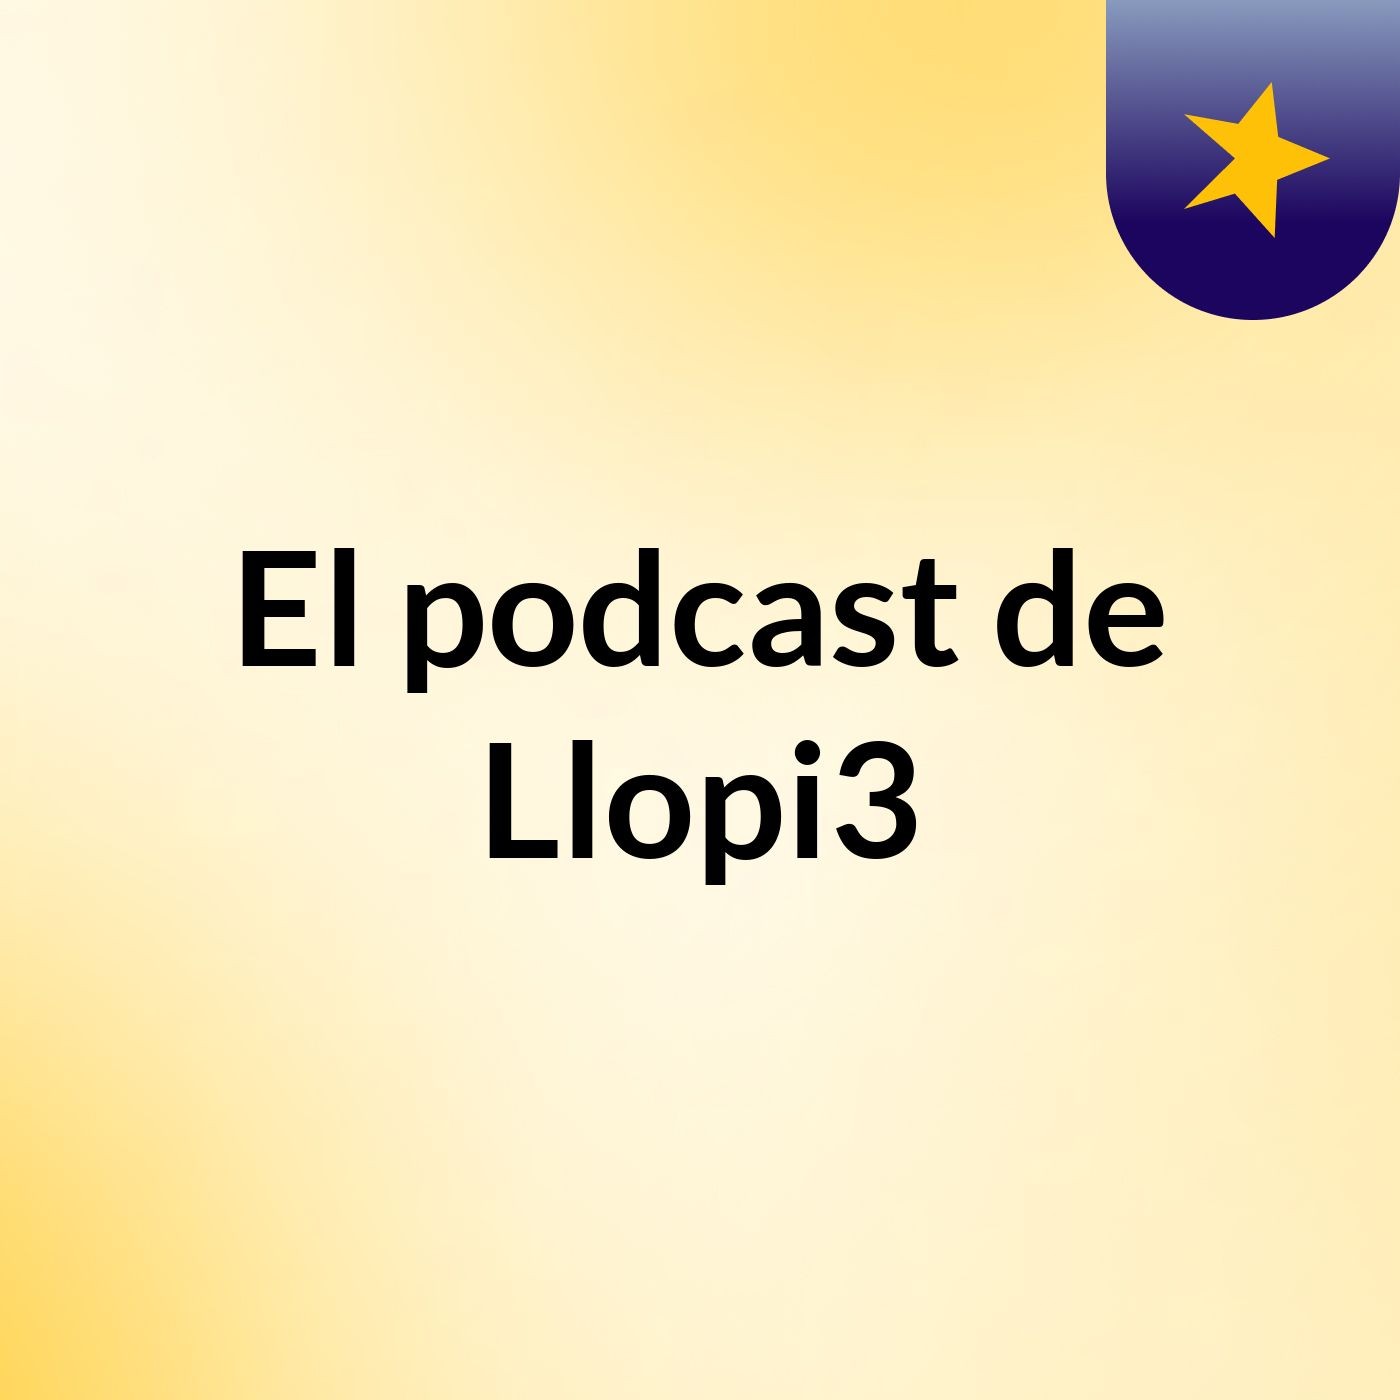 Episodio 6 - El podcast de Llopi3